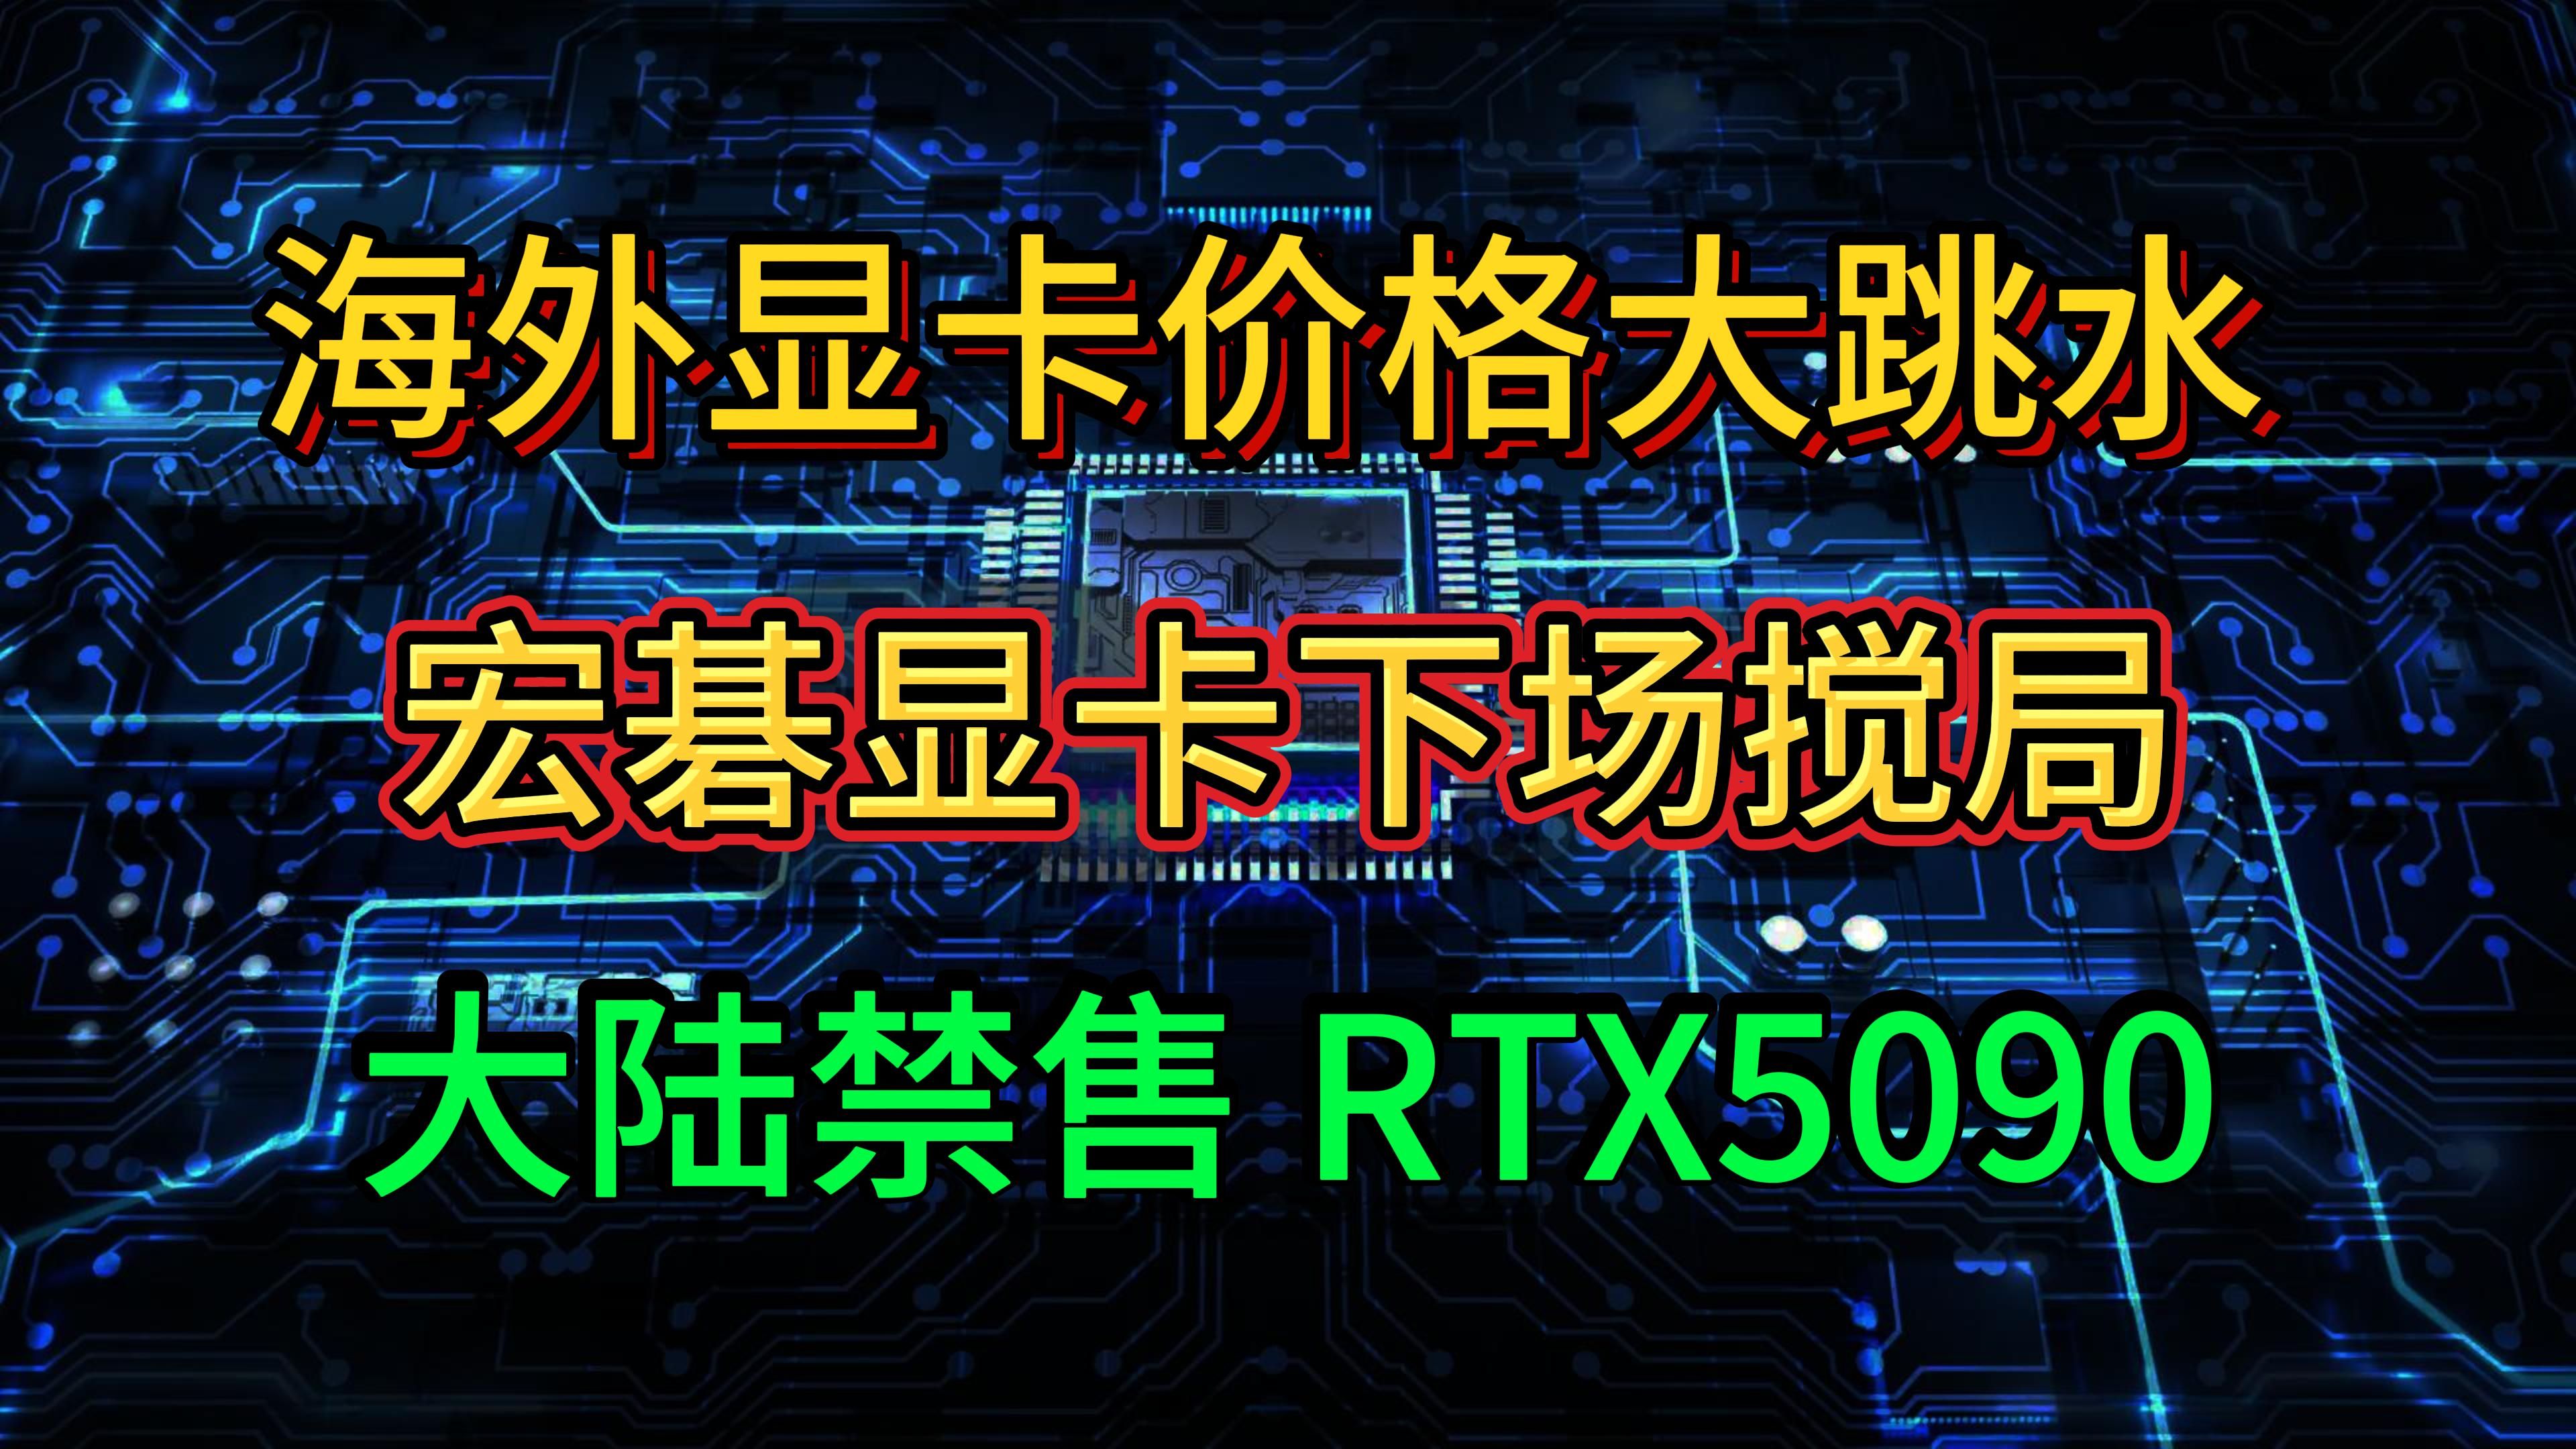 海外显卡多型号大跳水！大陆禁售RTX5090 宏碁AMD显卡 下场搅局 坤虫38个粉丝 价值几千